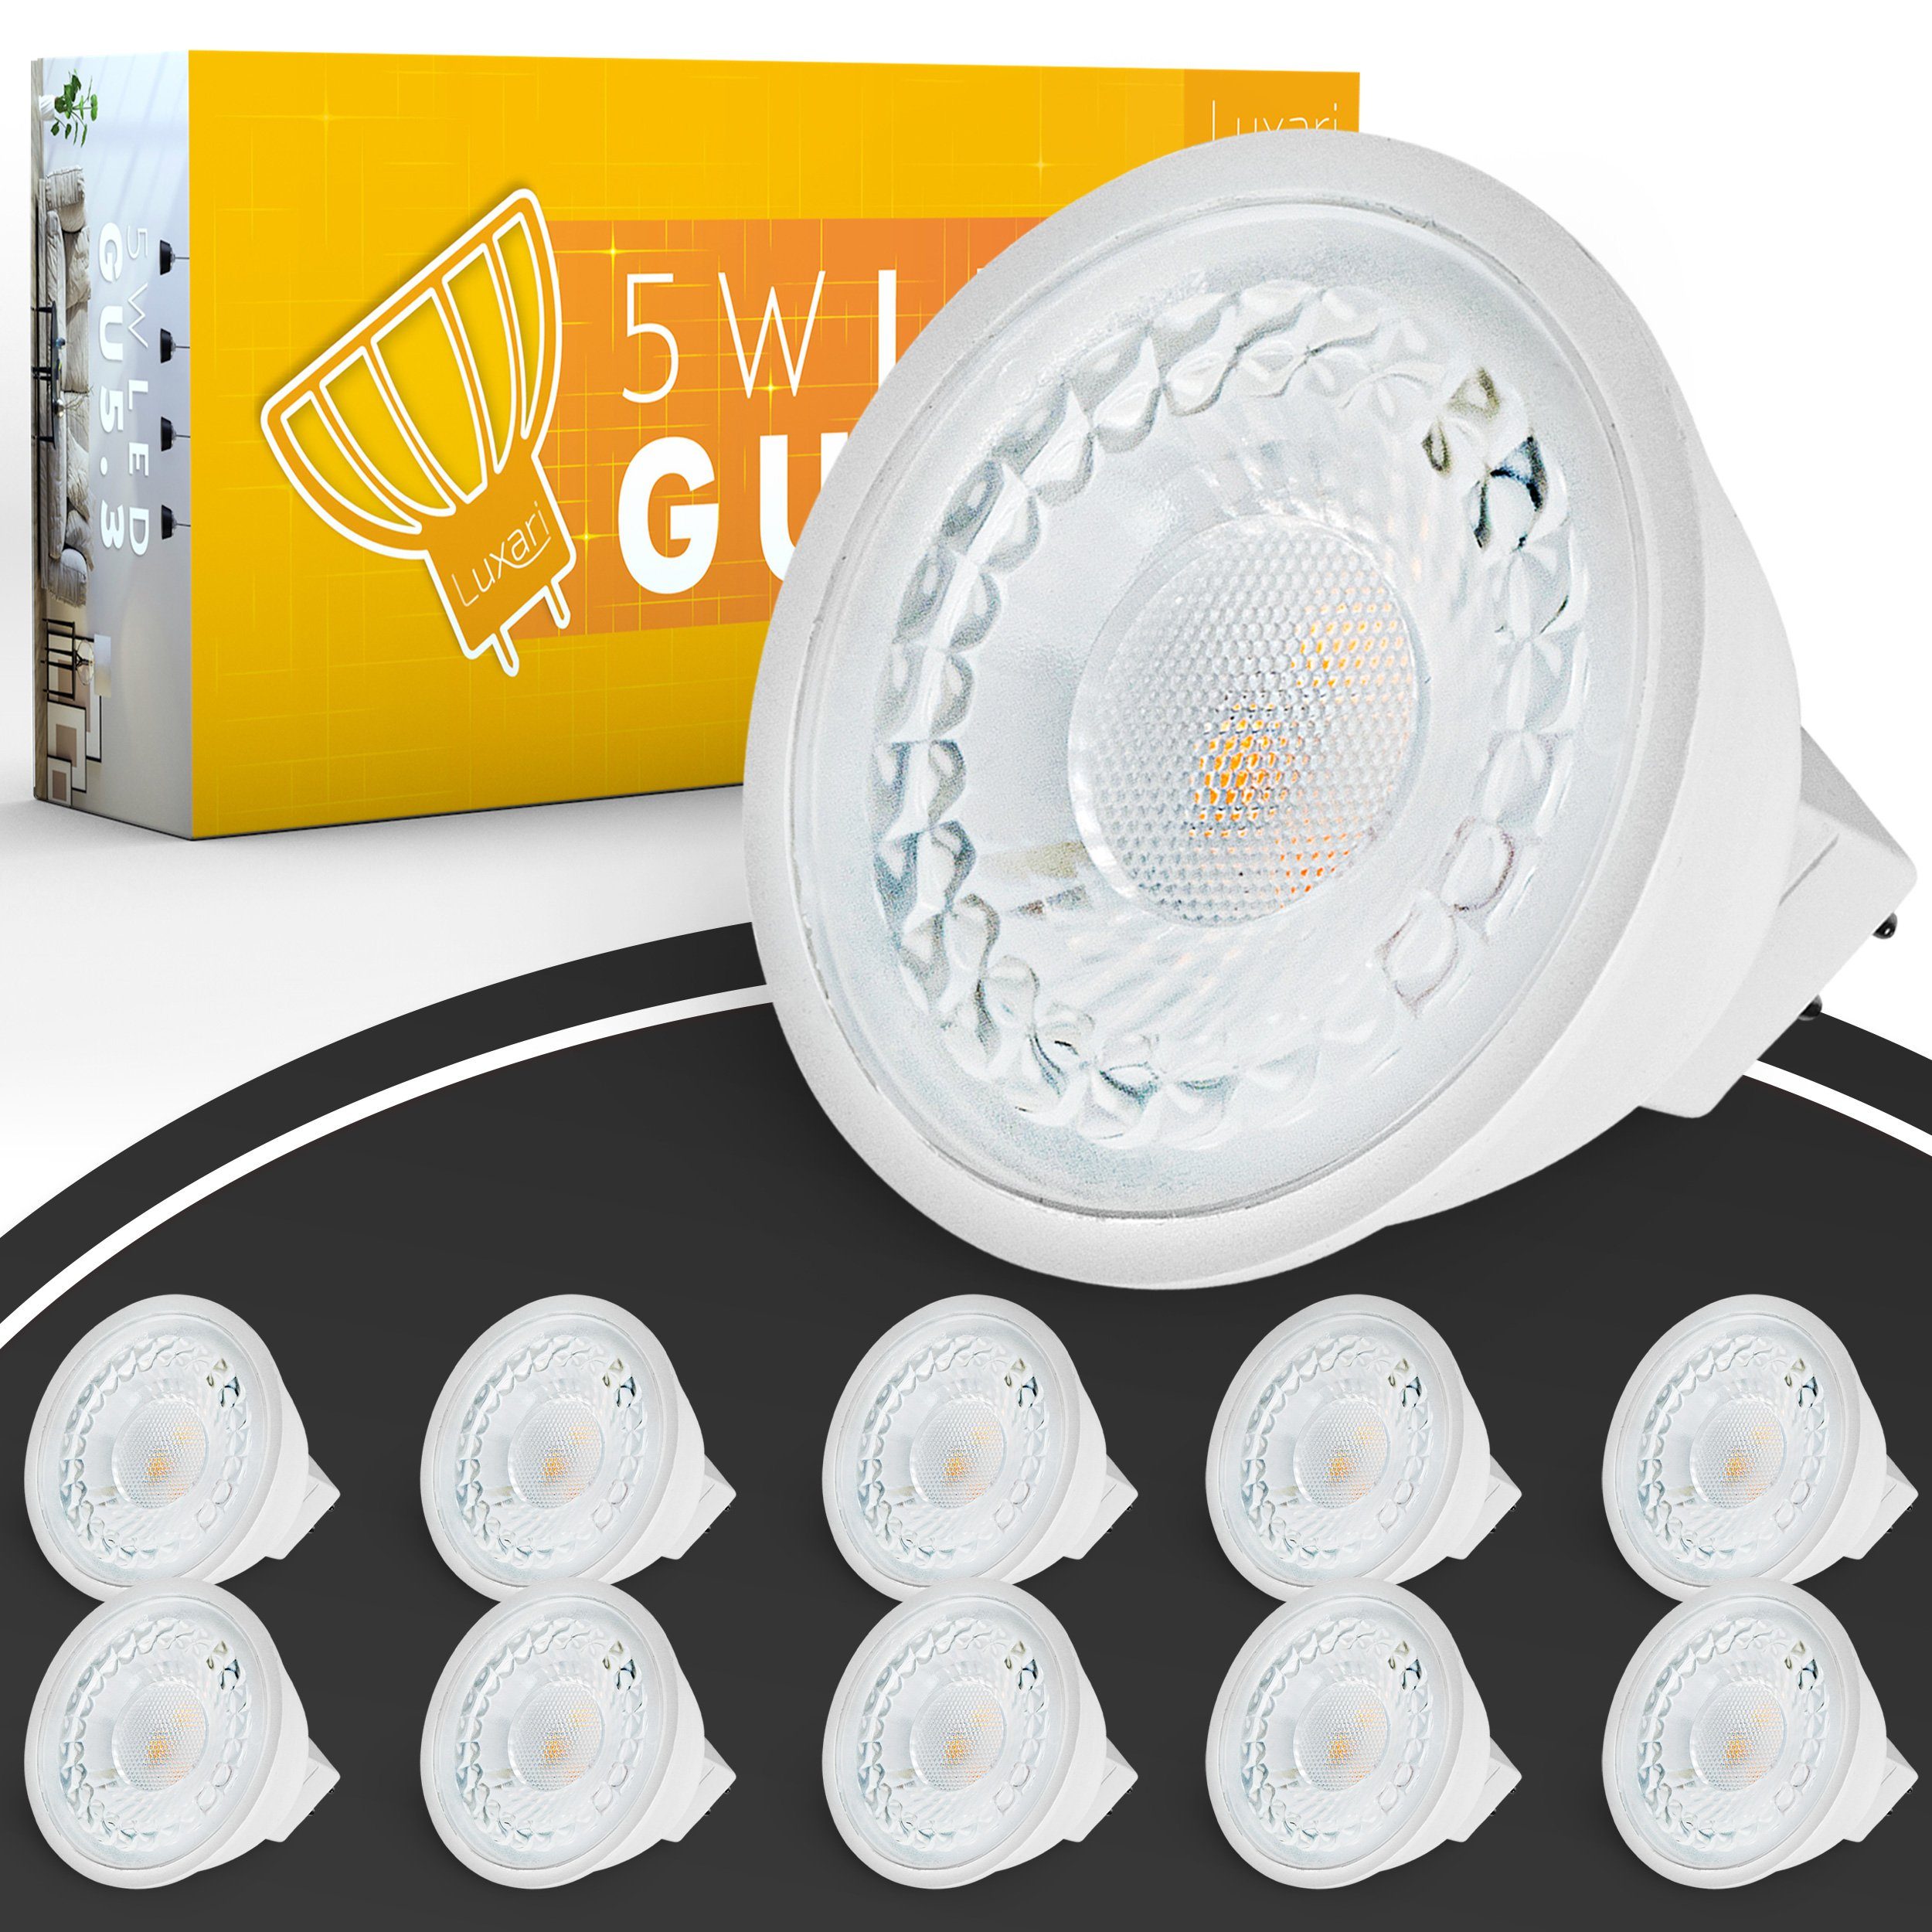 Luxari LED Deckenleuchte »Luxari GU5.3 LED Lampe [10x] − MR16 LED −  Entspricht 50W Halogenlampe − LED Leuchtmittel 5W 420lm − GU 5.3 LED Spot  mit 2700K warmweiß [Energieklasse A+]« online kaufen | OTTO